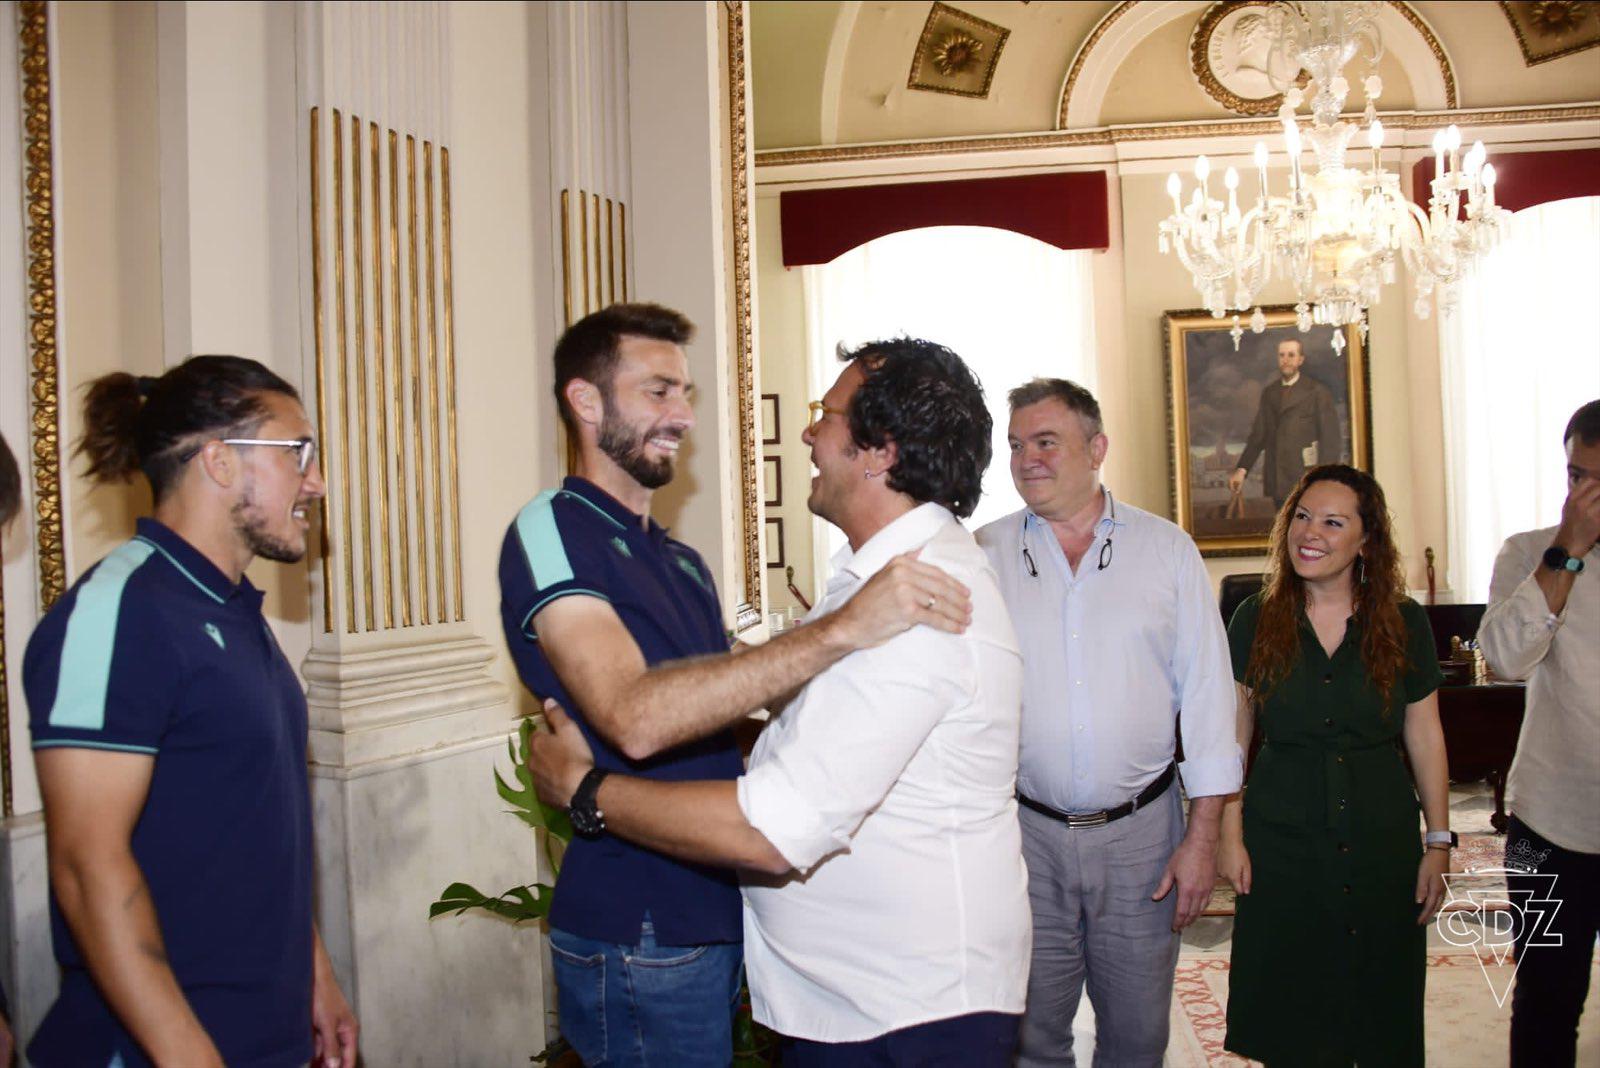 Choco Lozano como todo un ídolo: Así fue la “loca” celebración de los jugadores del Cádiz con su afición